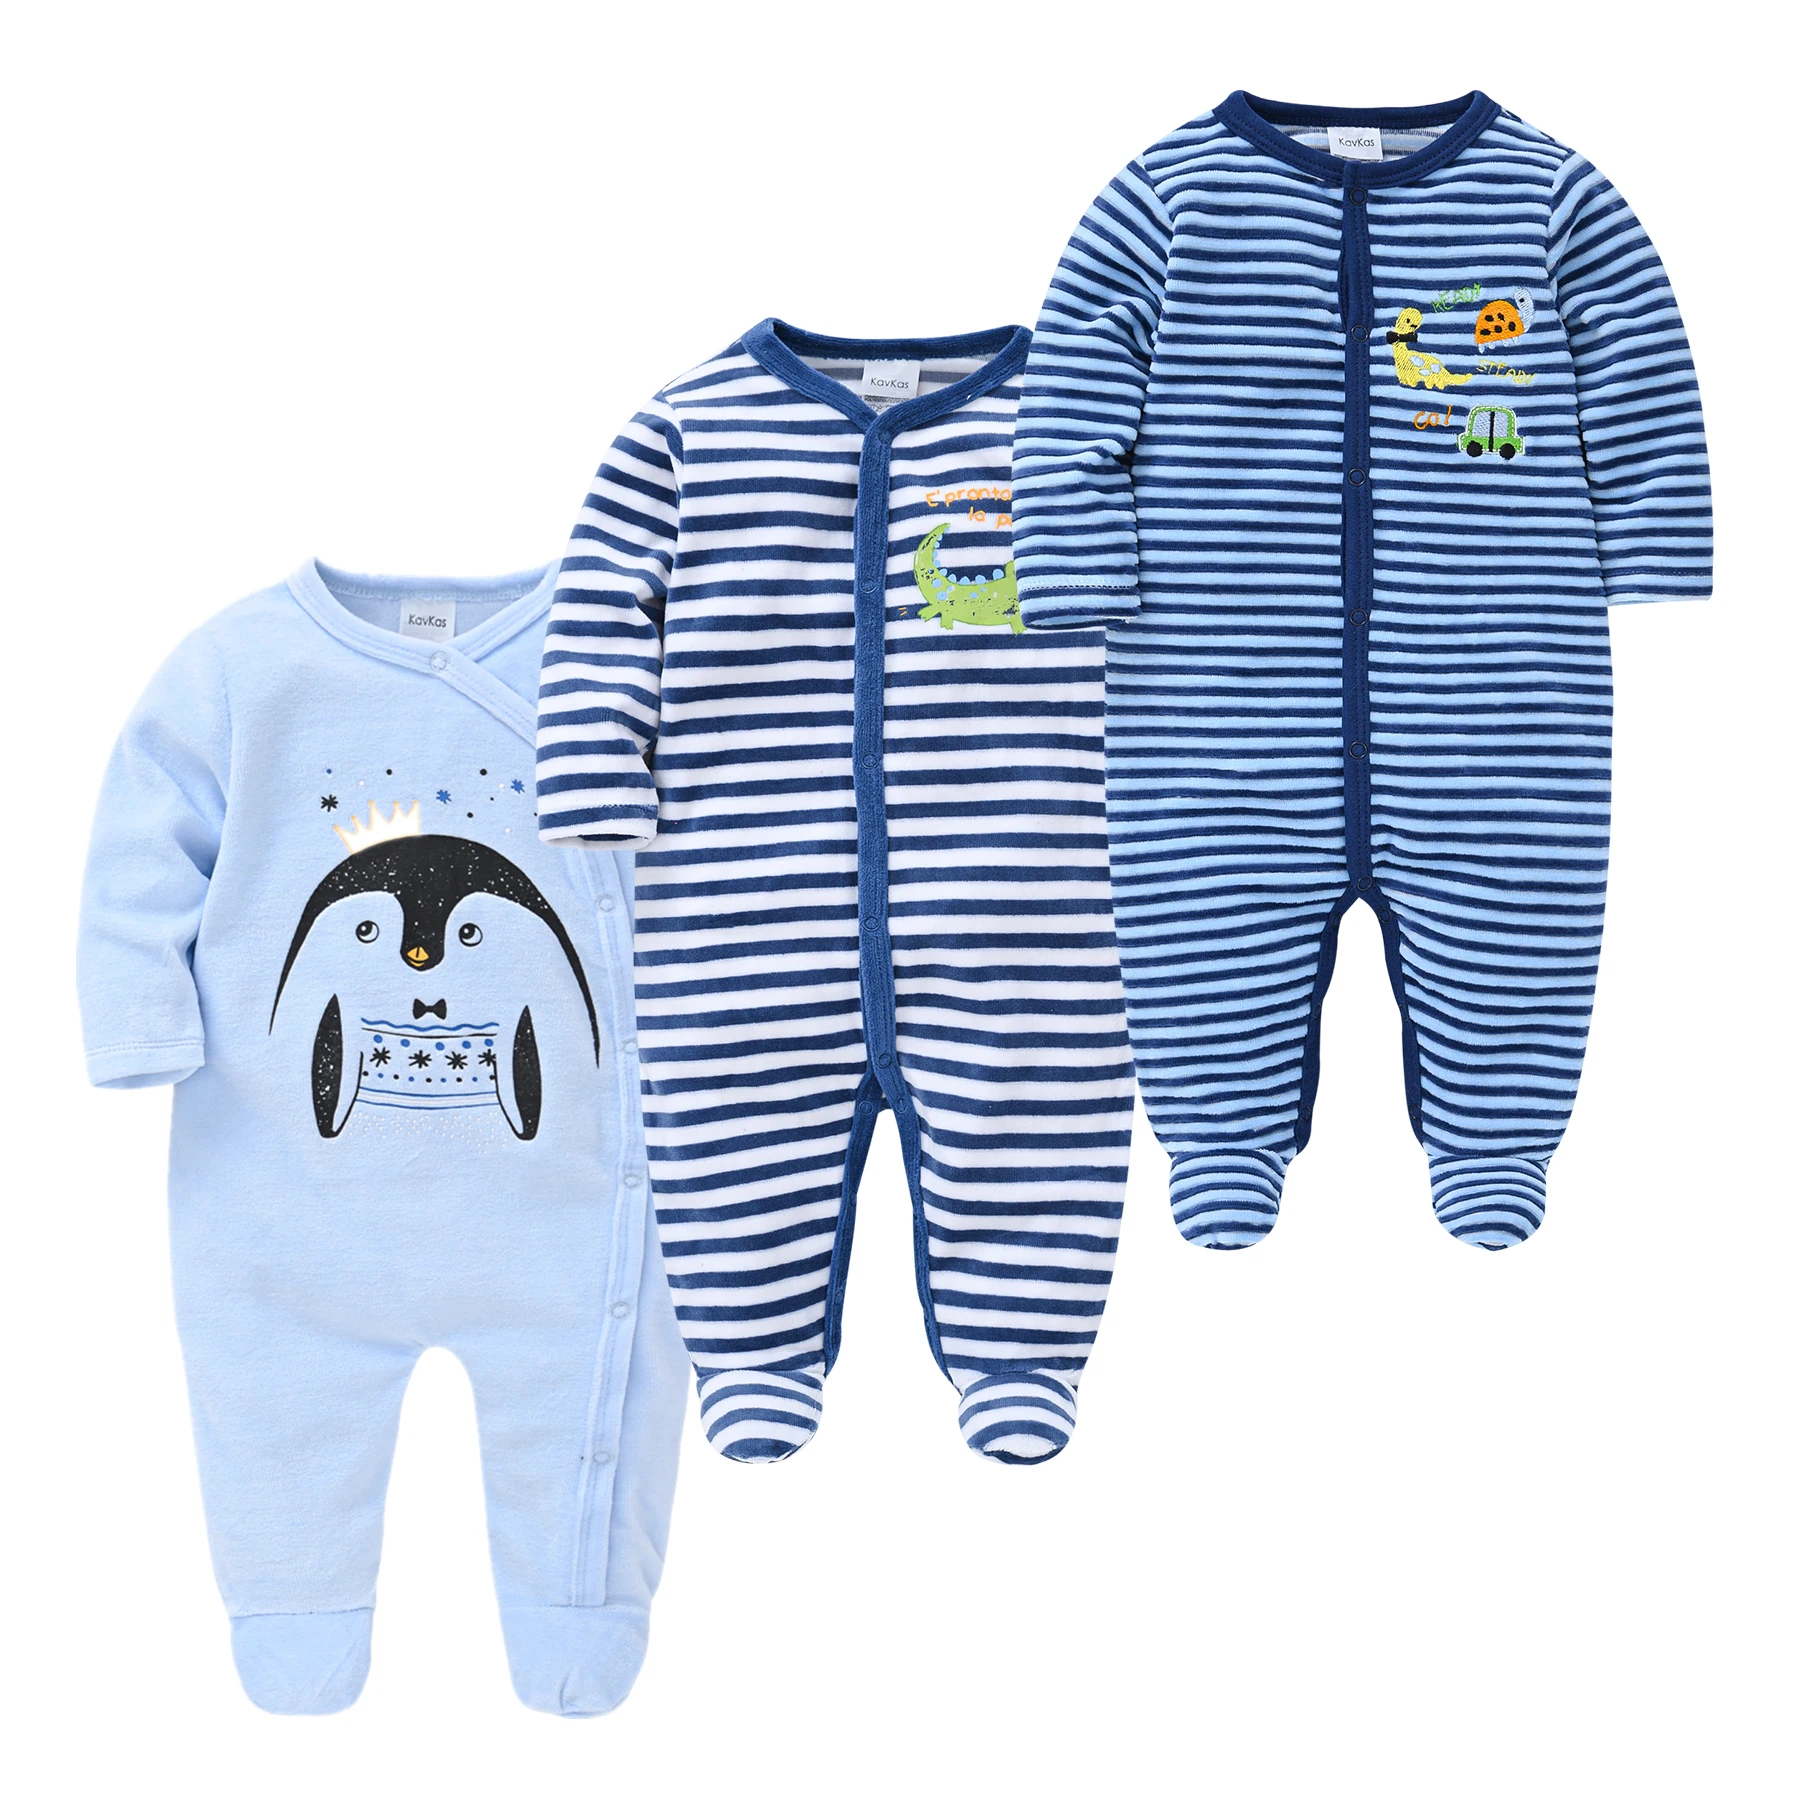 Tanio 3 sztuk Baby Cartoon Pijamas noworodka piżamy odzież dla